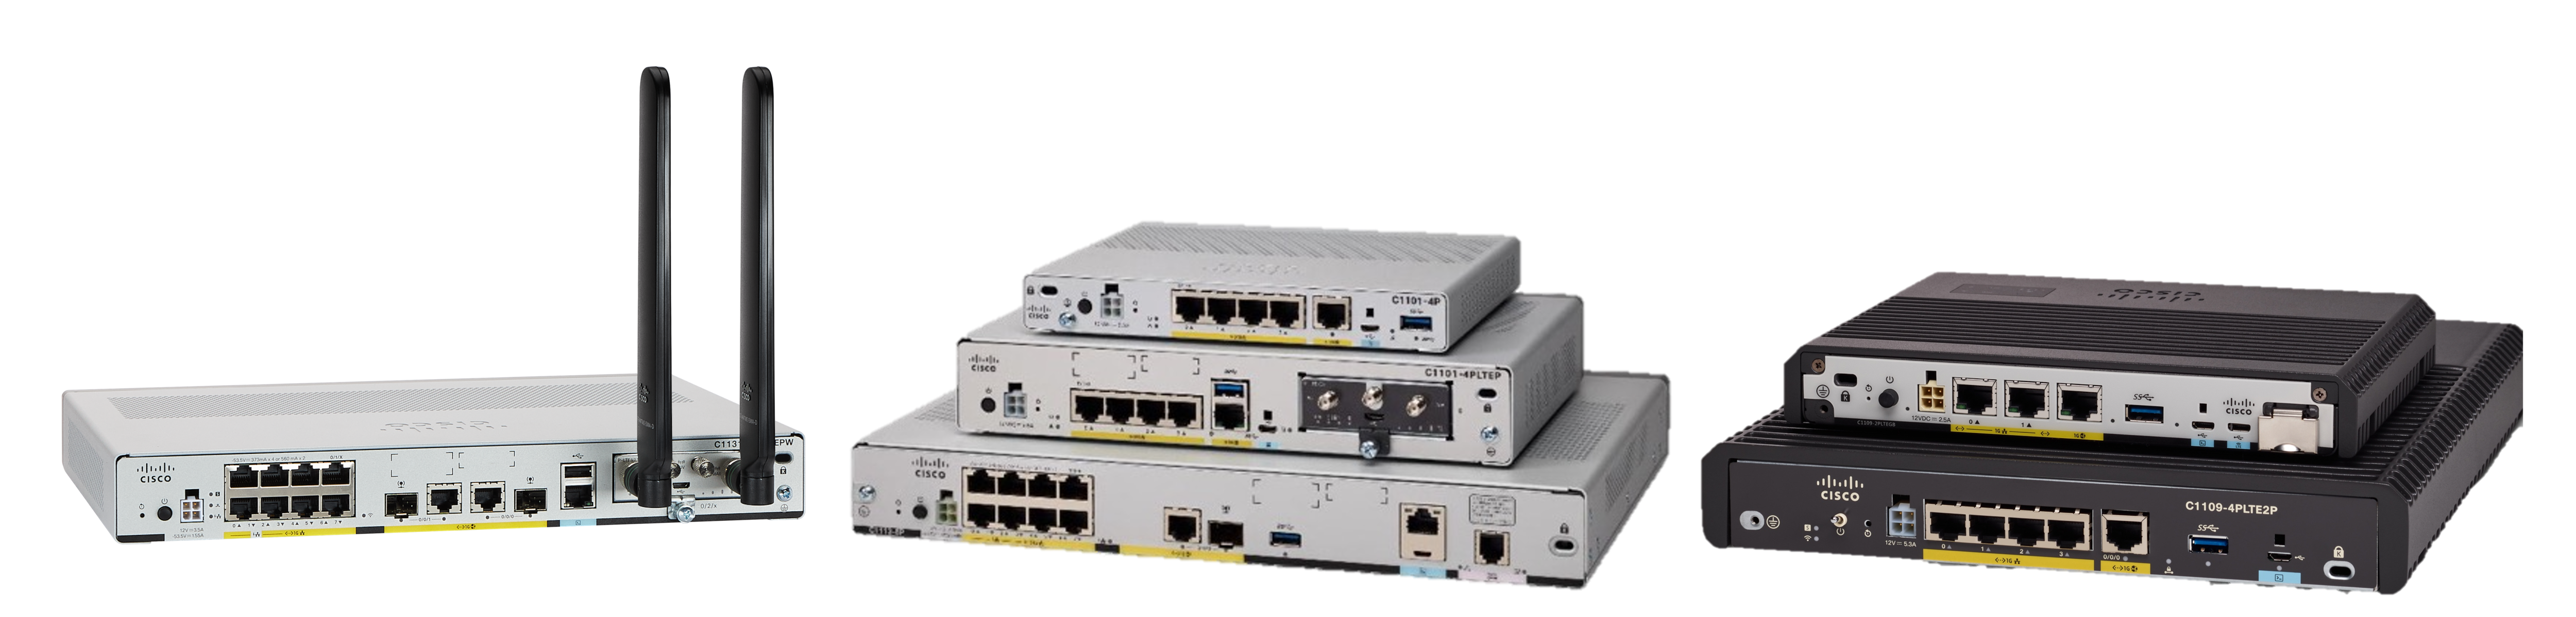 Cisco 1000 Routeurs à services intégrés série